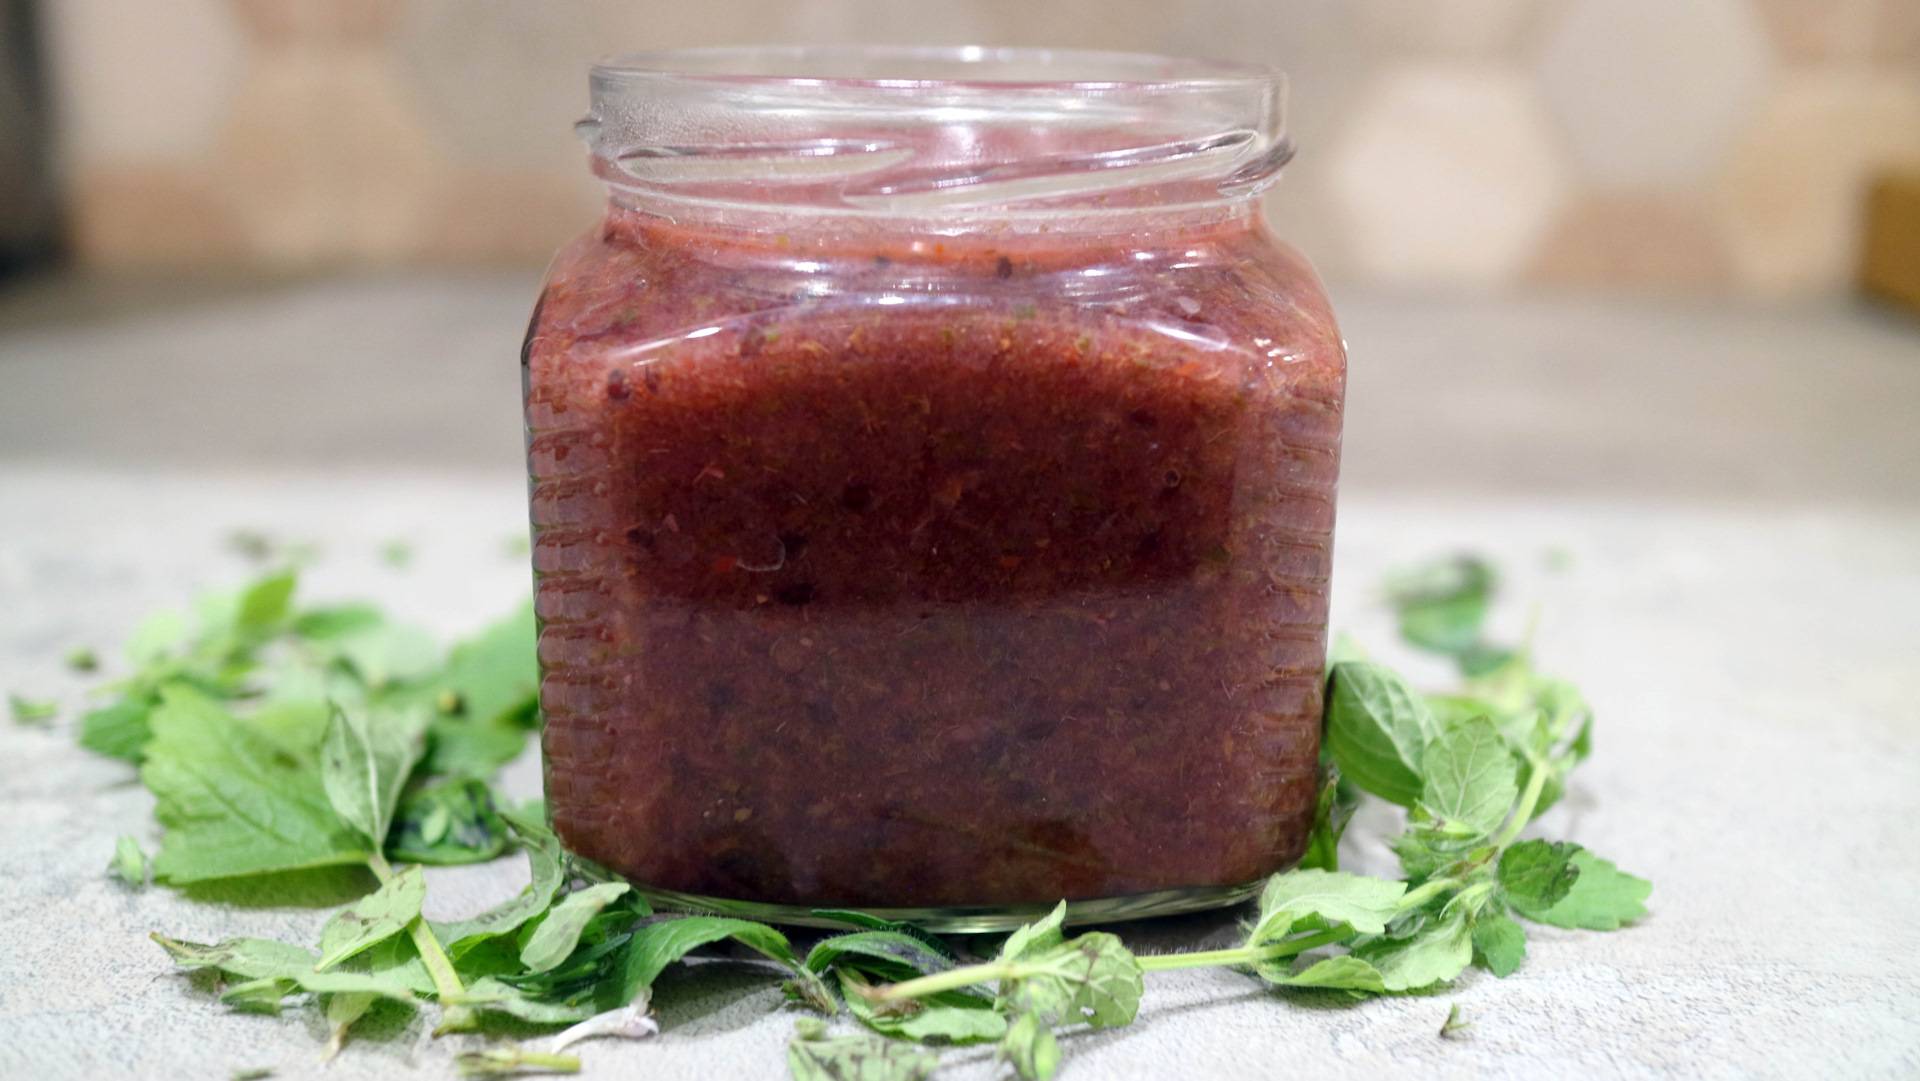 16 лучших рецептов приготовления соусов на зиму: простые, острые и вкусные заготовки